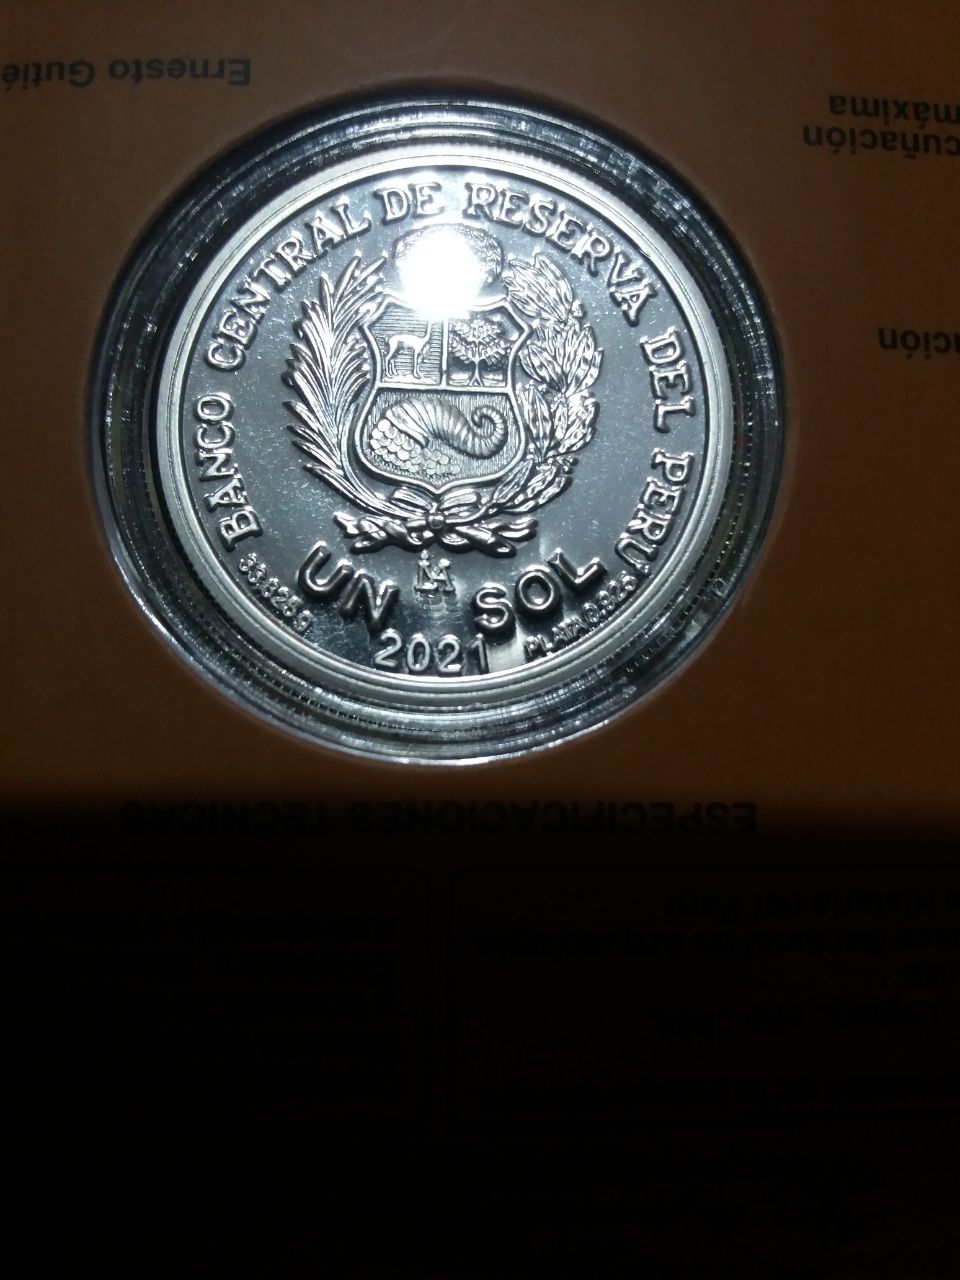 Perú moneda de colección 2021 Bicentenario de la independencia Photo513